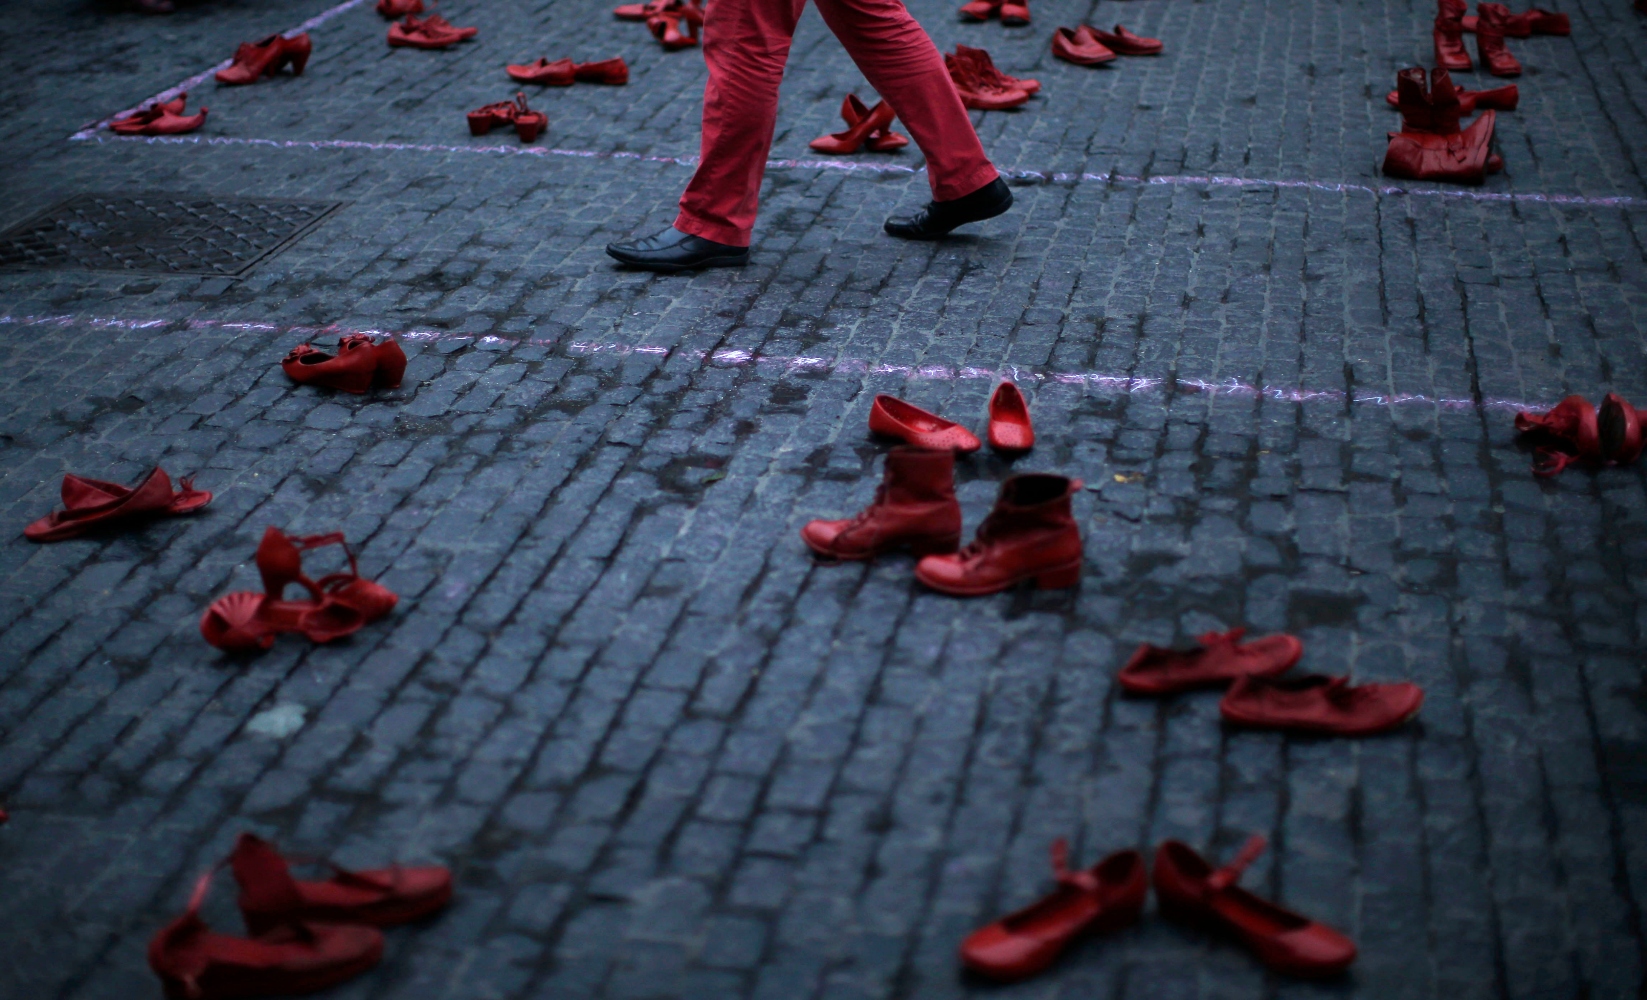 Γυναικοκτονία στη Χαλκιδική: Μαρτυρικός ο θάνατος της γυναίκας, σύμφωνα με την ιατροδικαστική